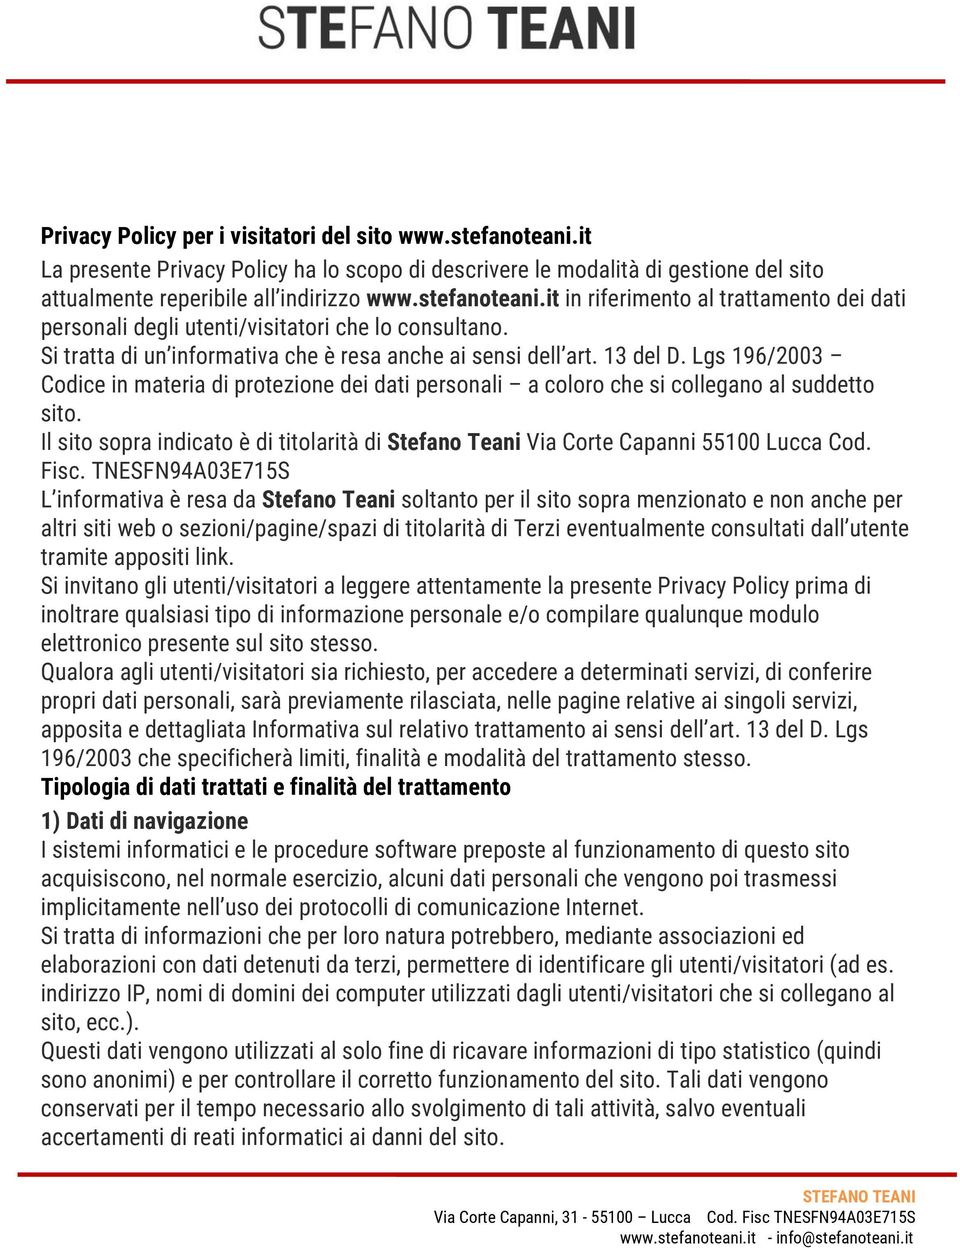 Lgs 196/2003 Codice in materia di protezione dei dati personali a coloro che si collegano al suddetto sito. Il sito sopra indicato è di titolarità di Stefano Teani Via Corte Capanni 55100 Lucca Cod.